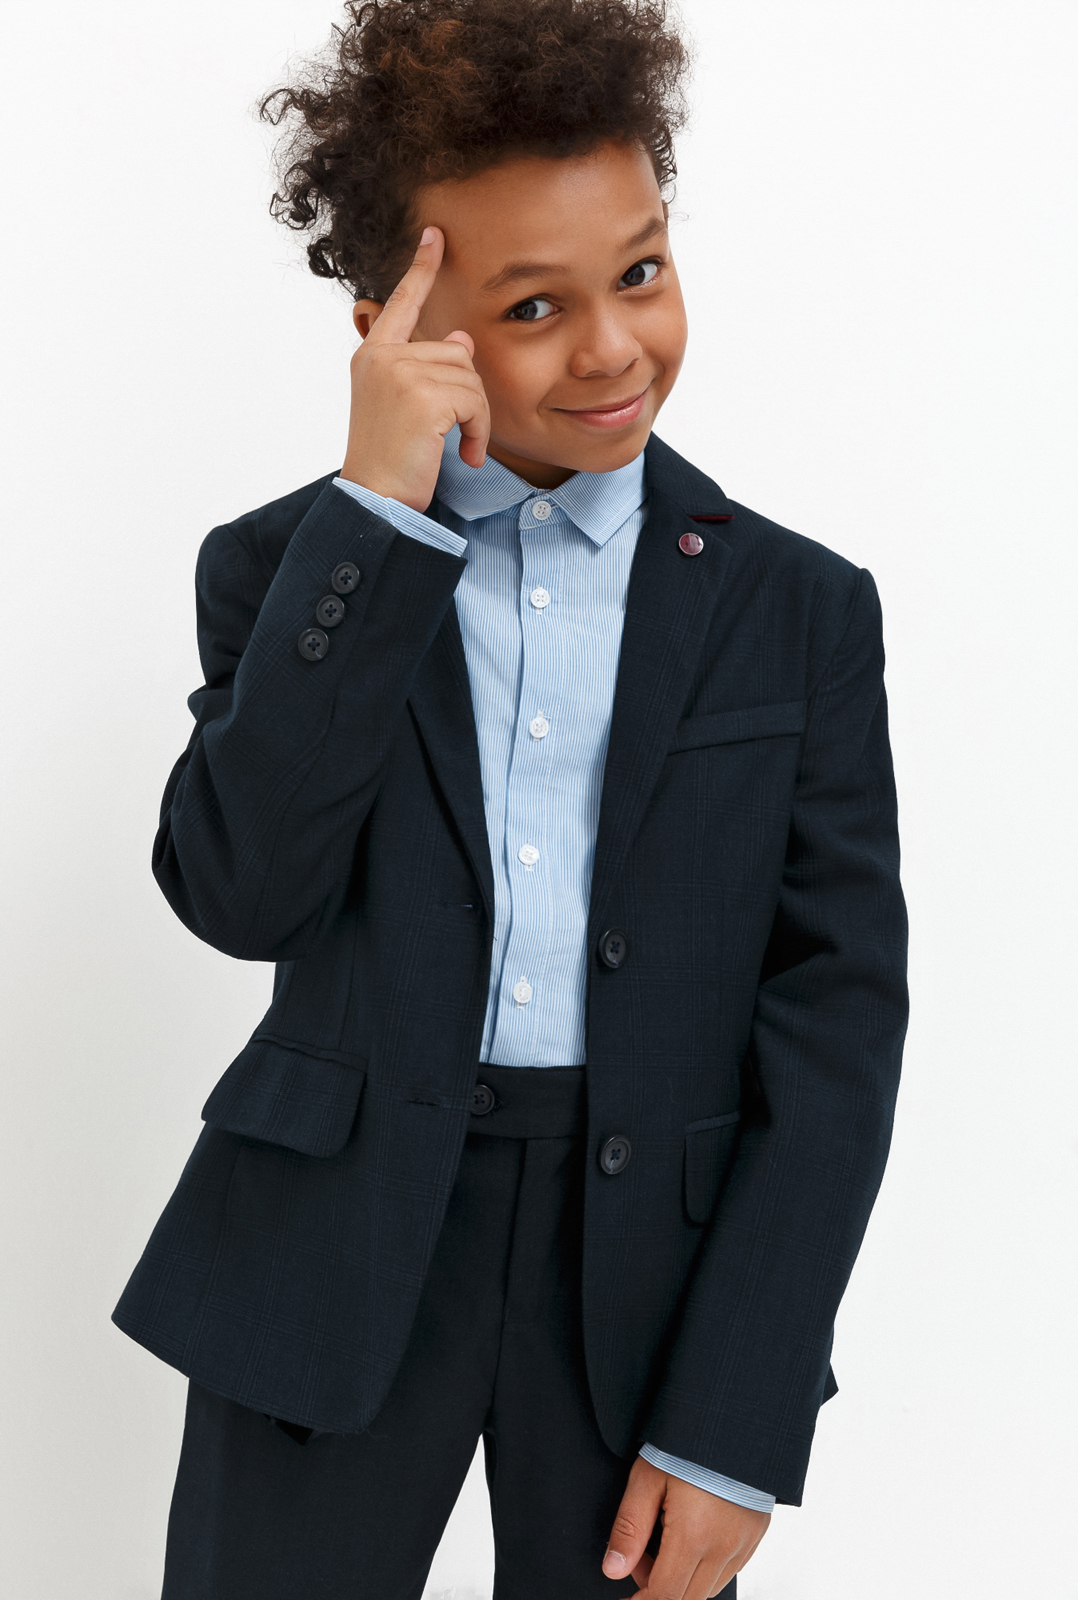 Пиджак для мальчика Acoola Chandler, цвет: темно-голубой. 20140130030_600. Размер 140